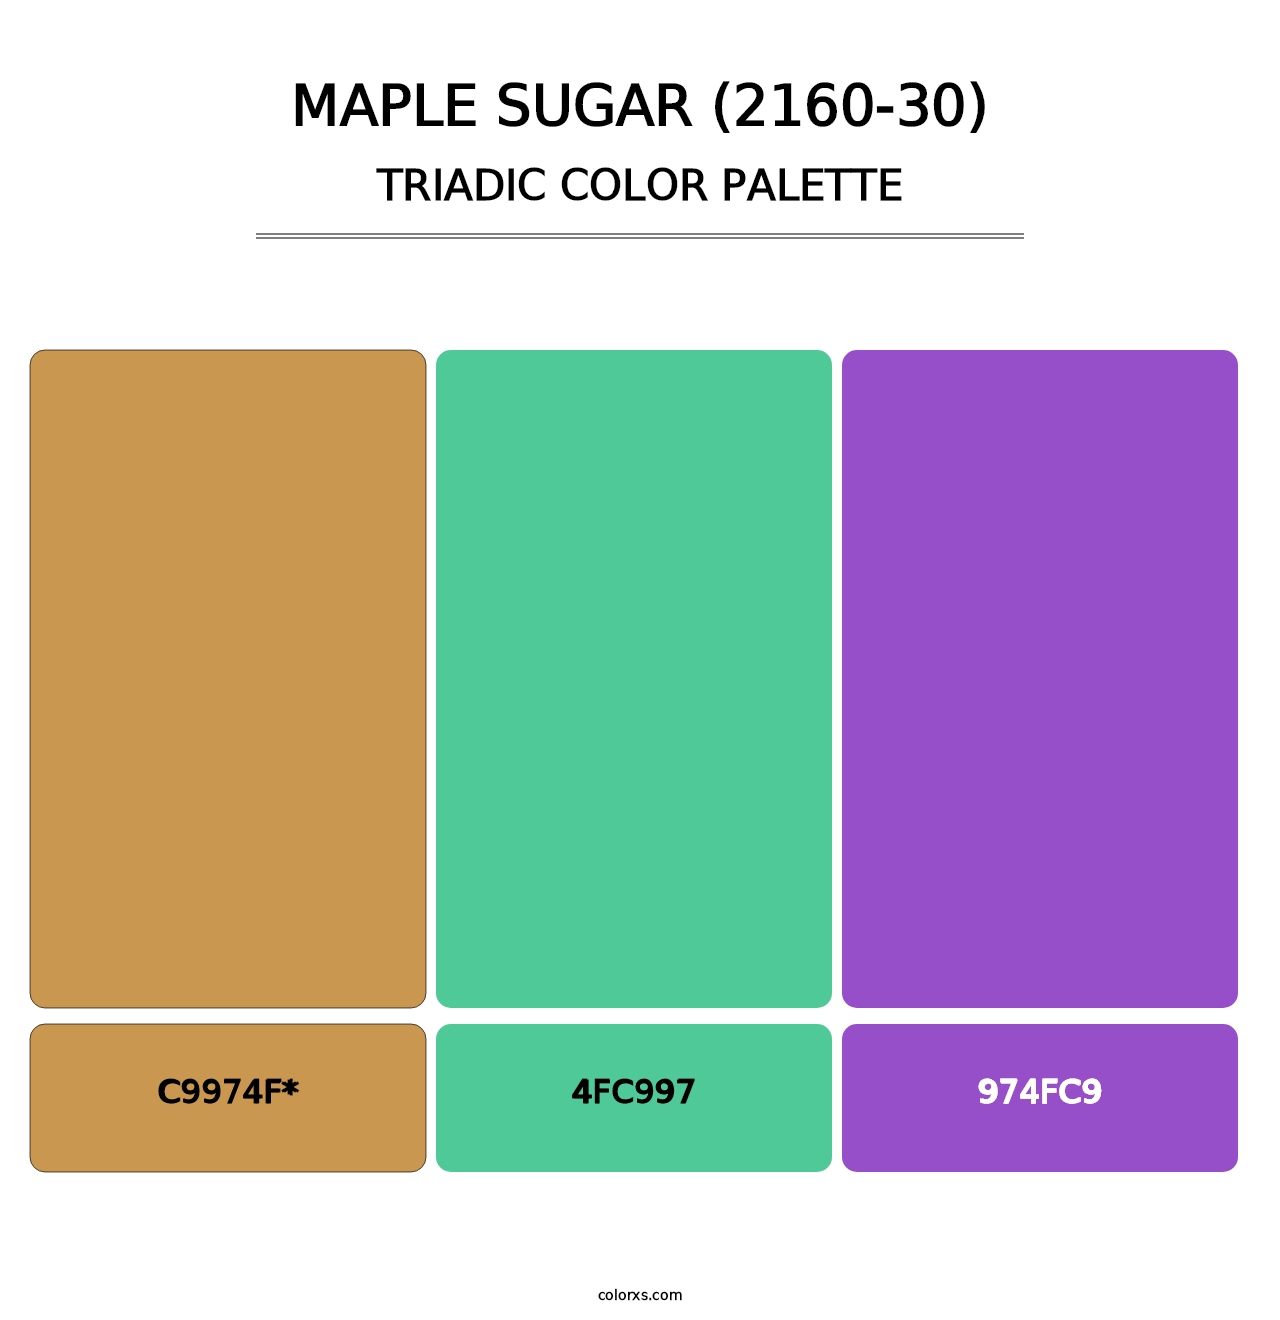 Maple Sugar (2160-30) - Triadic Color Palette